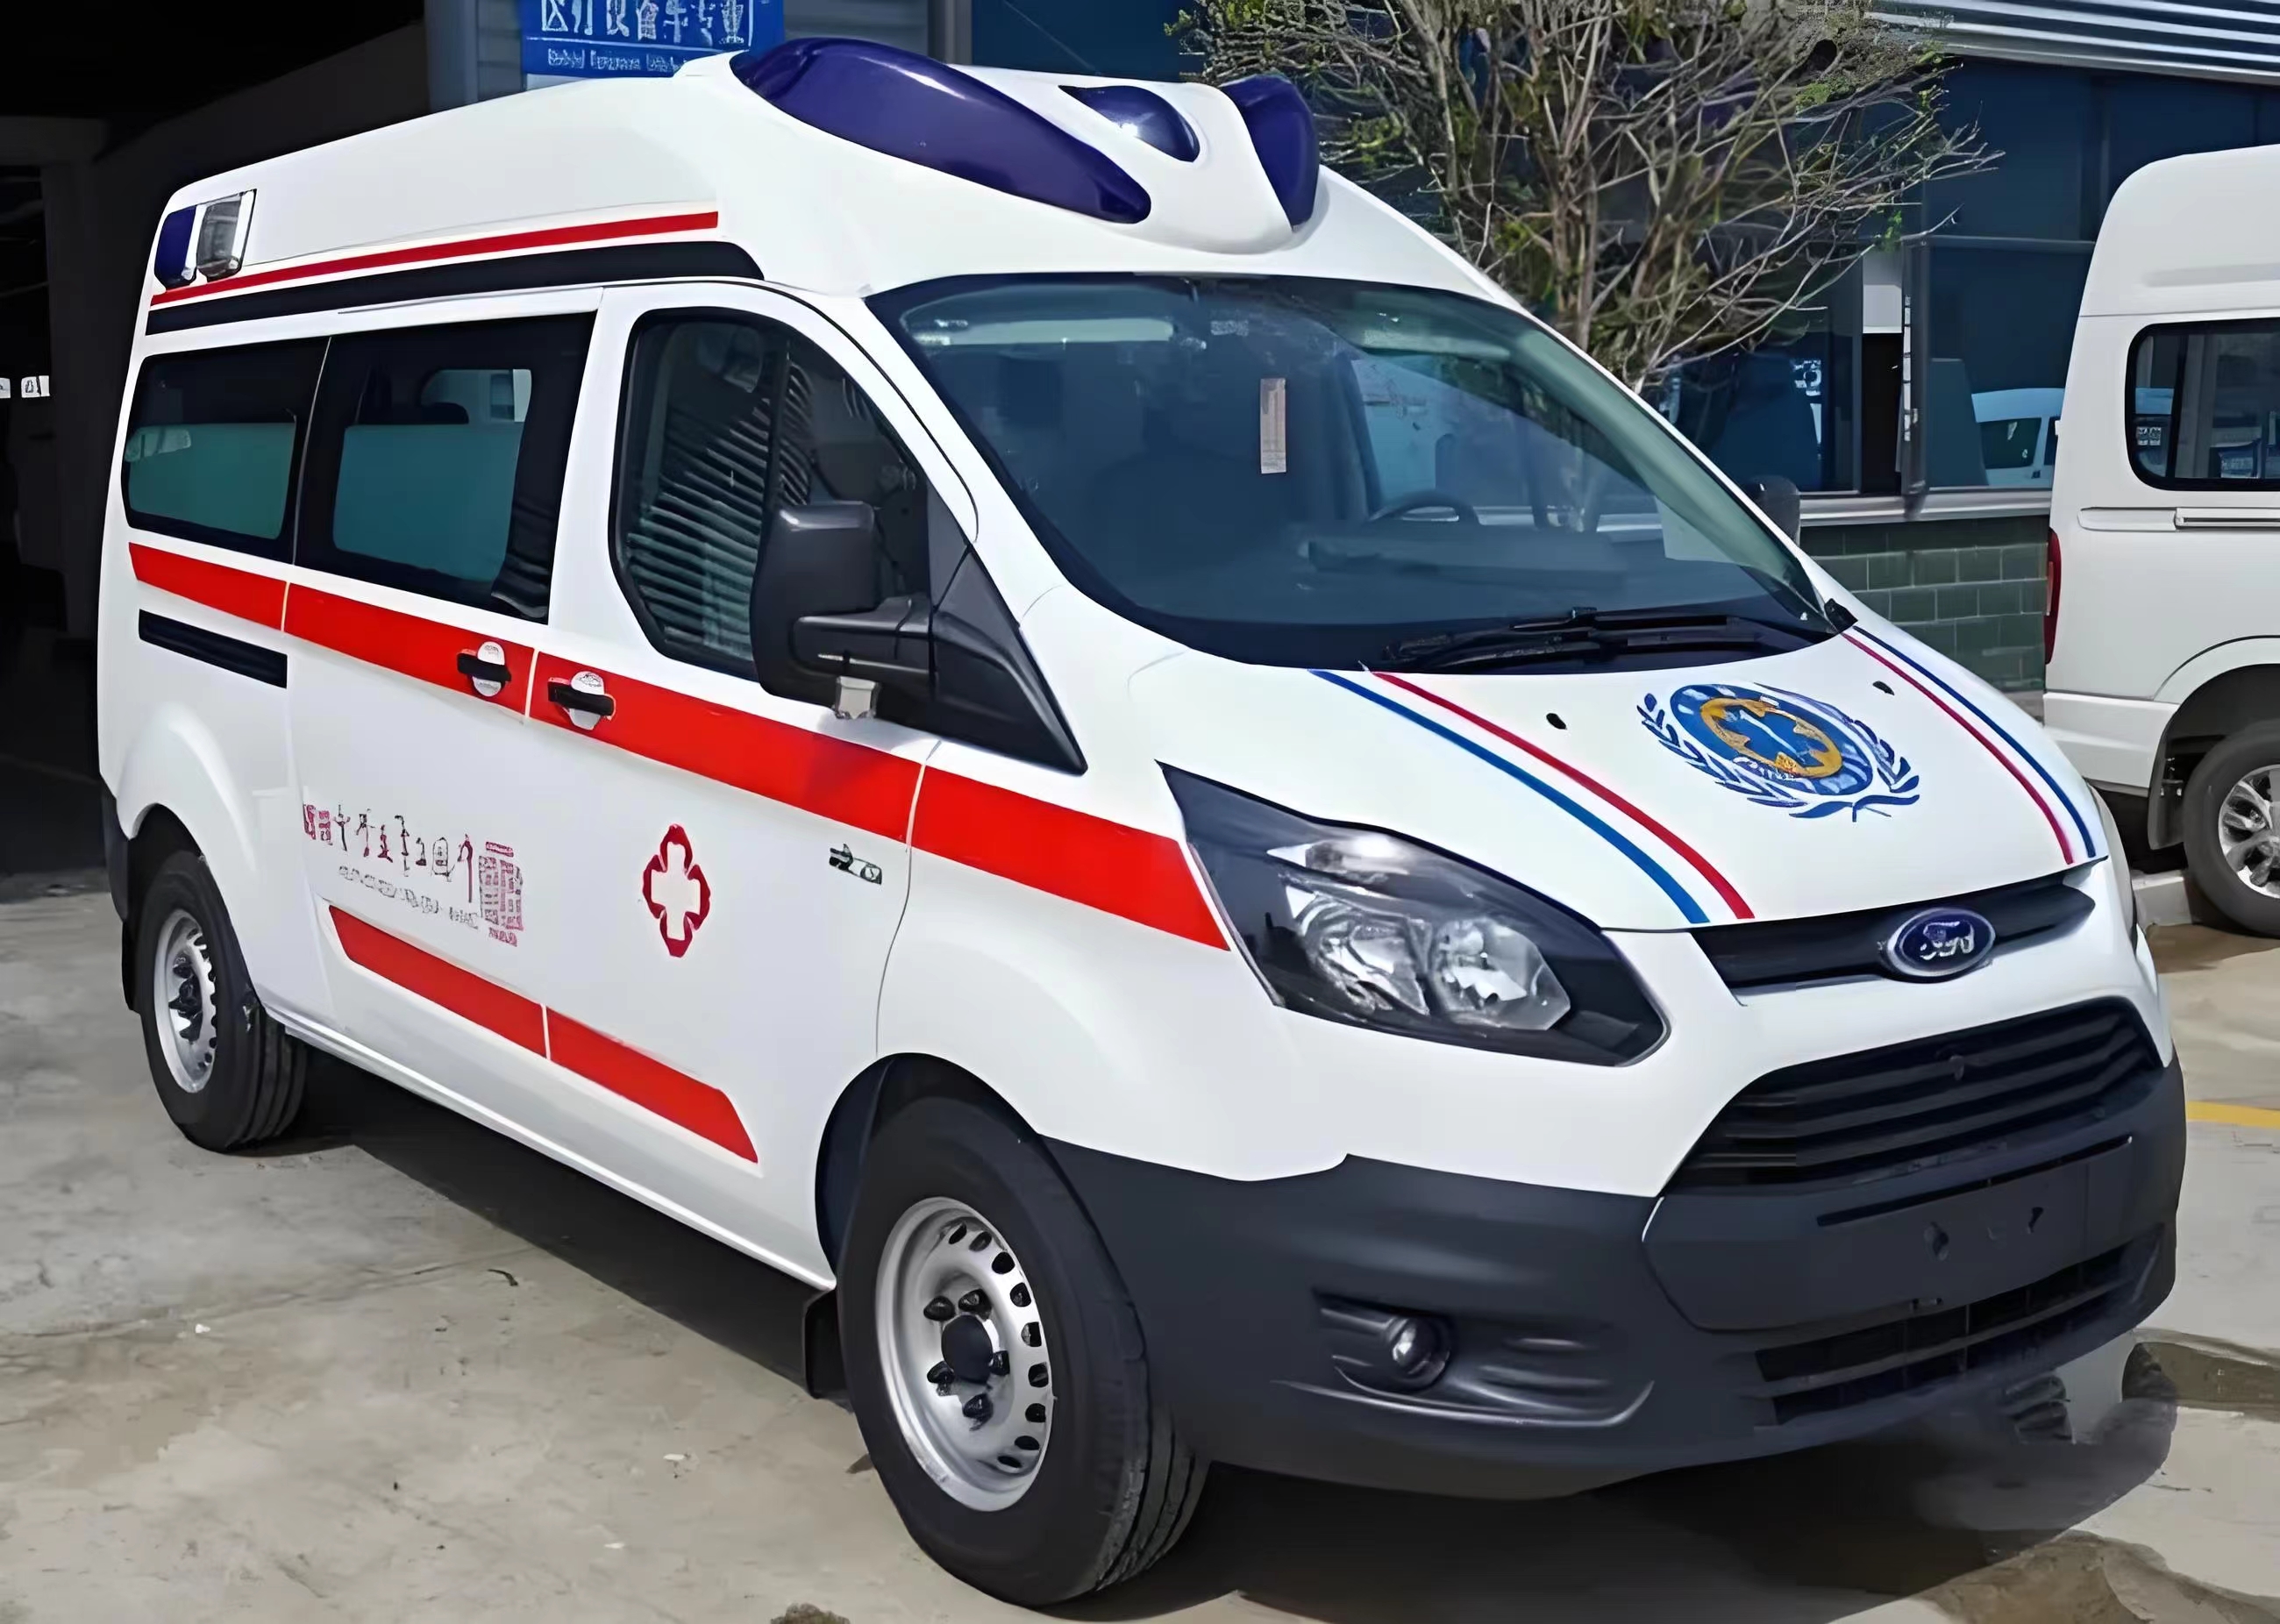 惠州120救护车出院-跨省救护车出租--24小时服务